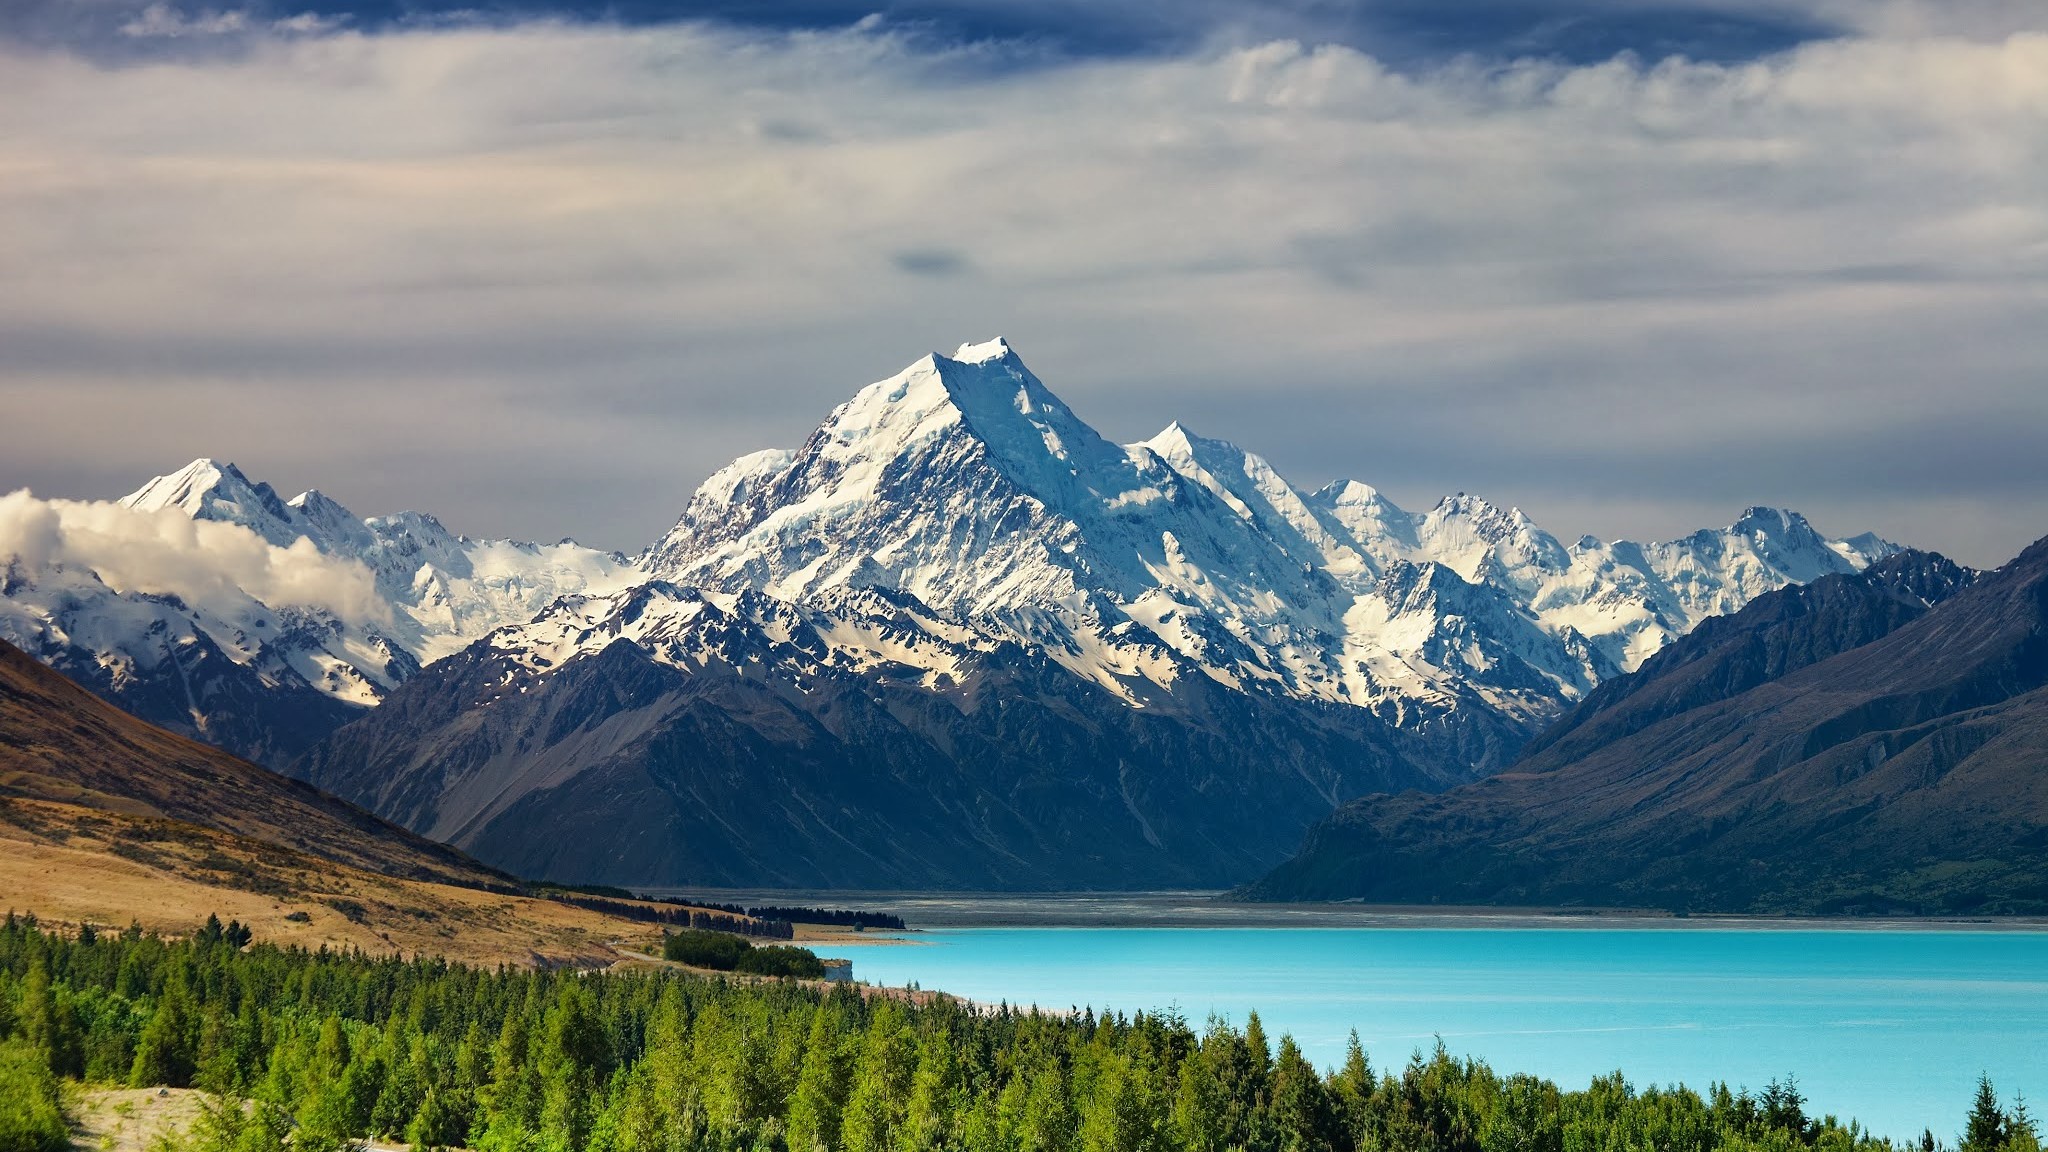 Mount Cook, New Zealand. Source worldfortravel.com.